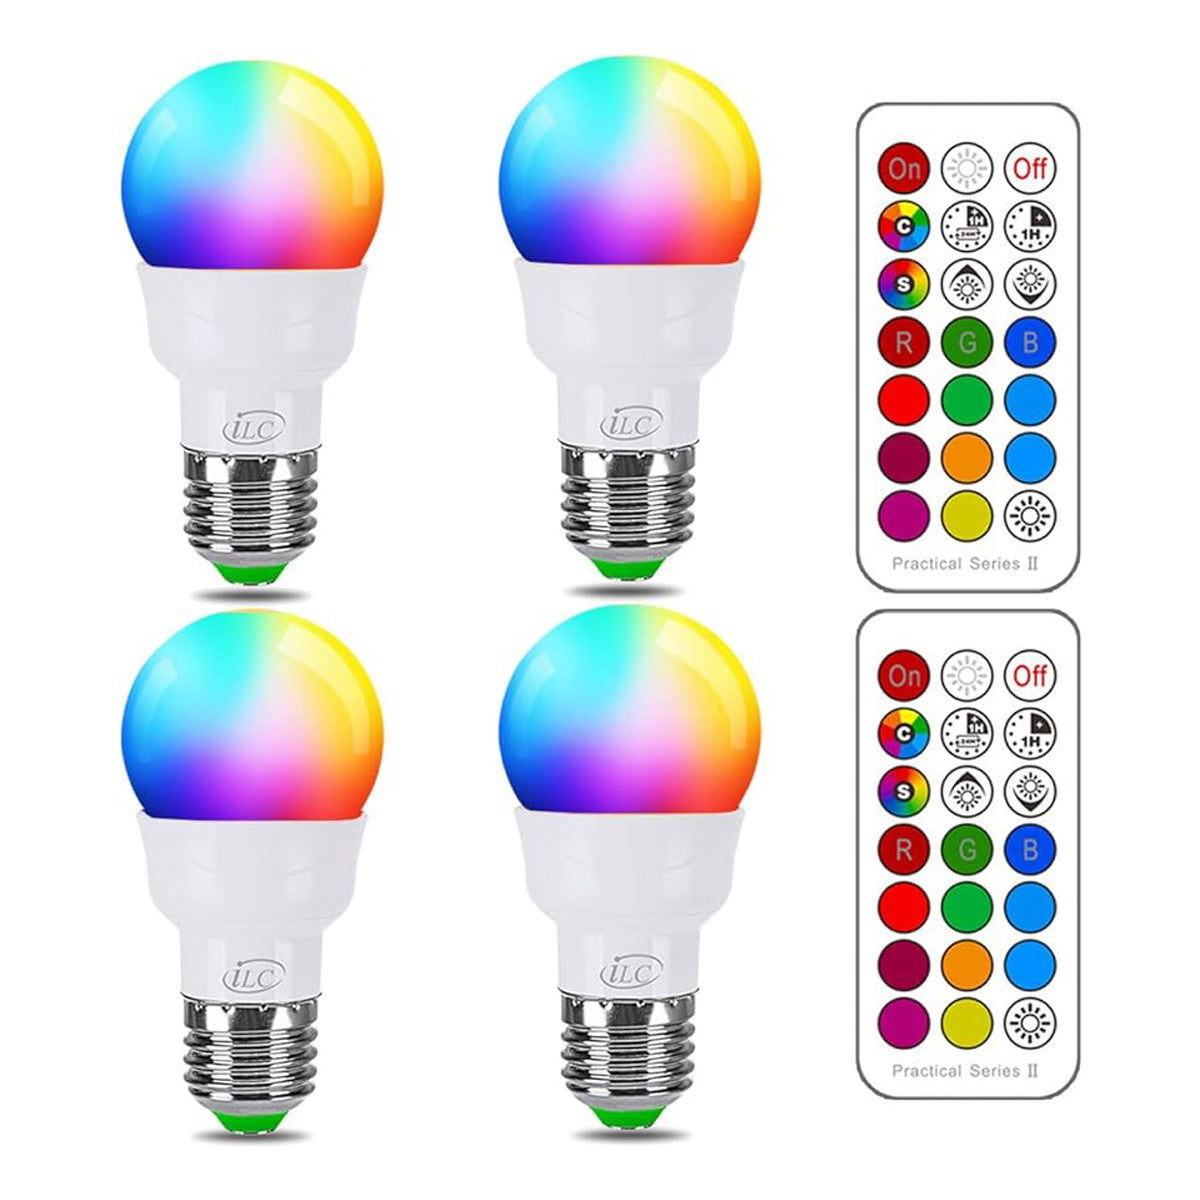 Lampadina LED RGB ILC che cambia colore, equivalente a 40 W, 450 LM, 2700 K Bianco caldo 5 W E26 Base a vite RGBW, Lampadina Flood Light - 12 scelte di colore - Telecomando a infrarossi temporizzati (confezione da 4) 